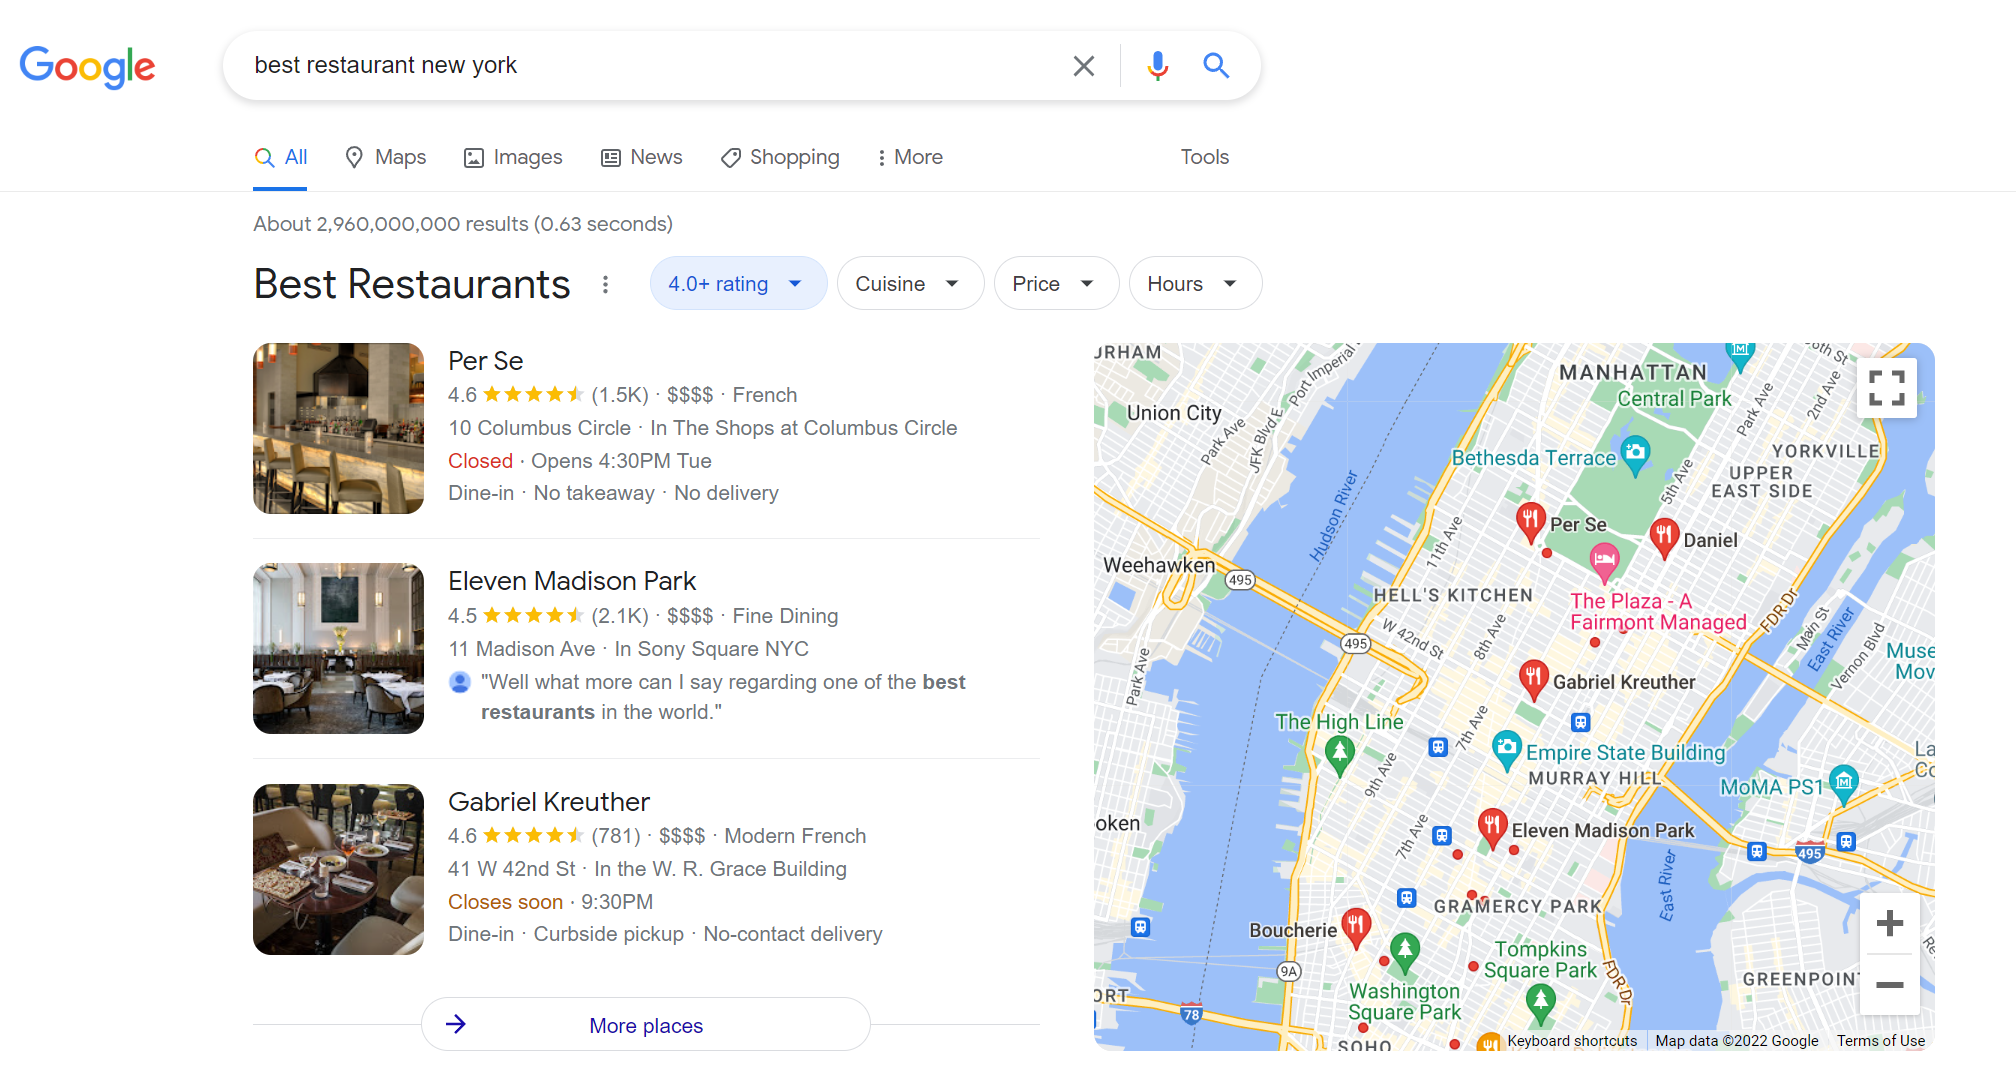 Google Maps results for: best restaurant New York